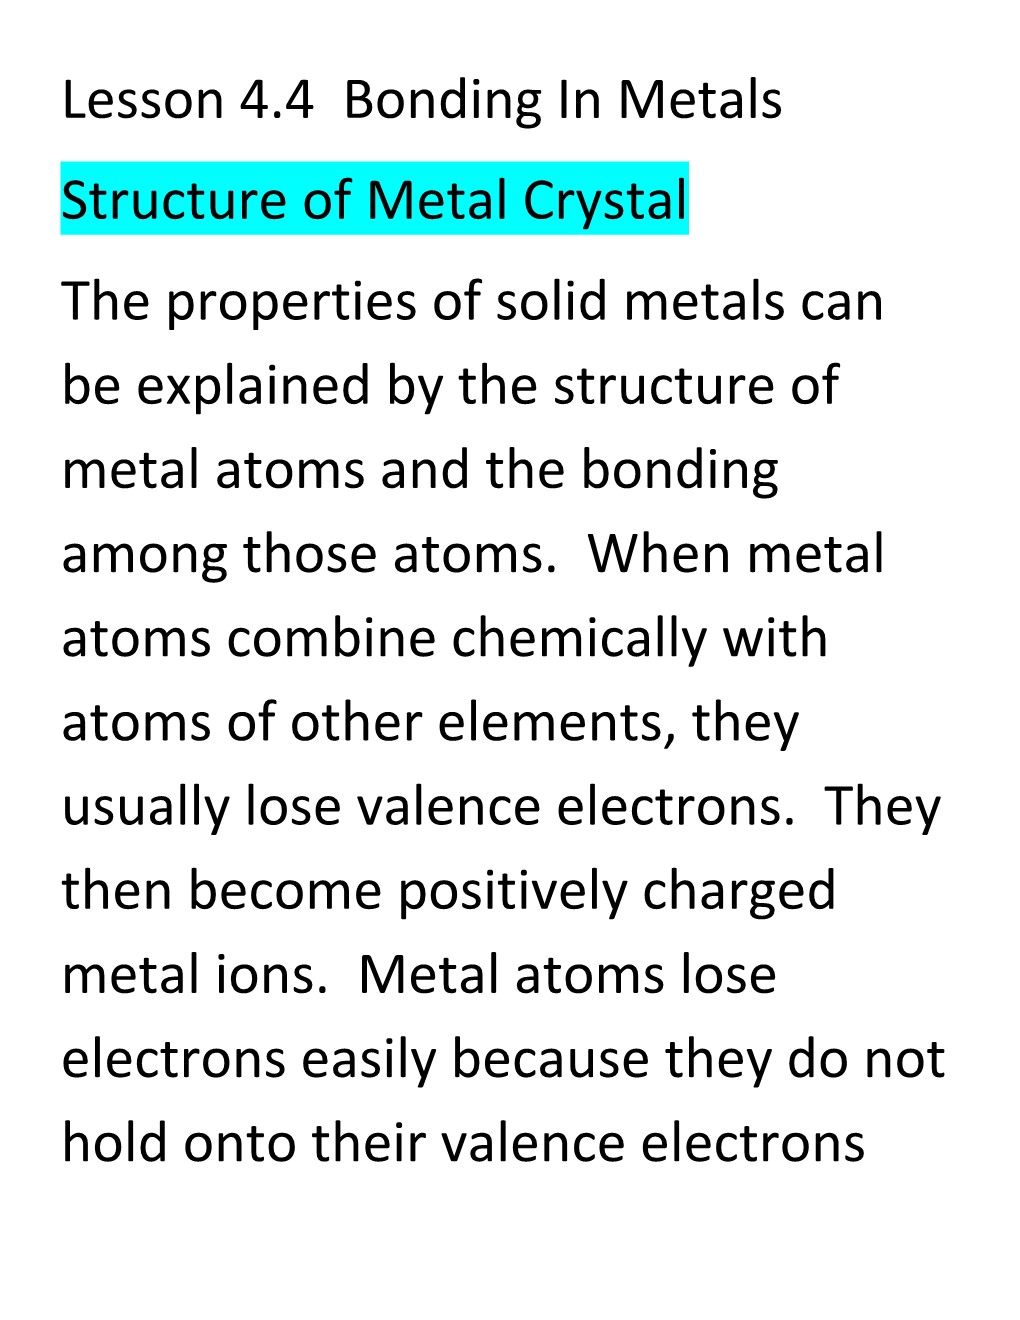 Lesson 4.4 Bonding in Metals